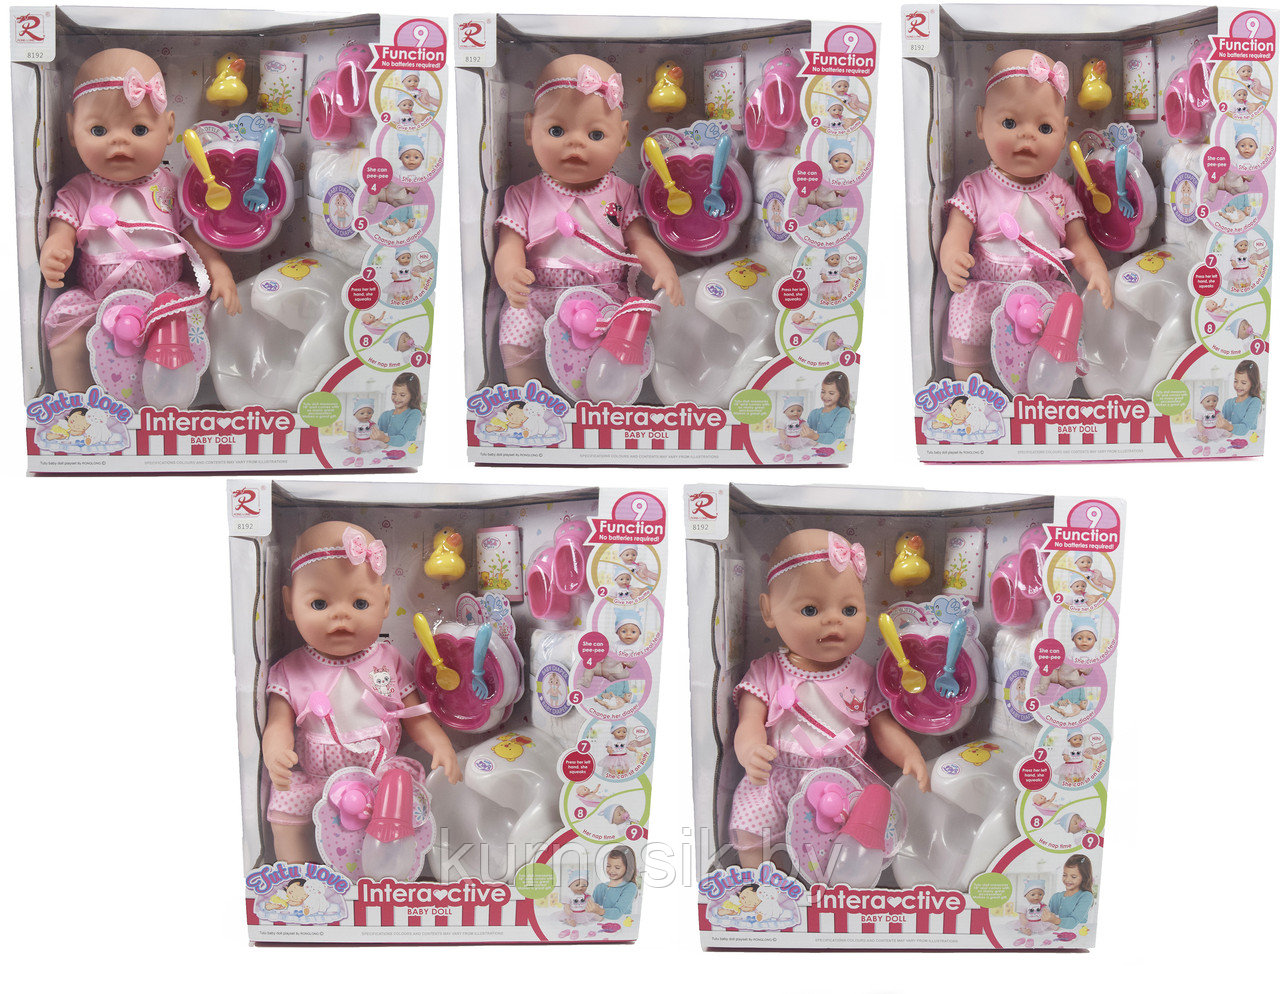 Кукла-пупс Baby doll интерактивная 9 функций (пьет, писает, спит и плачет) арт.8192